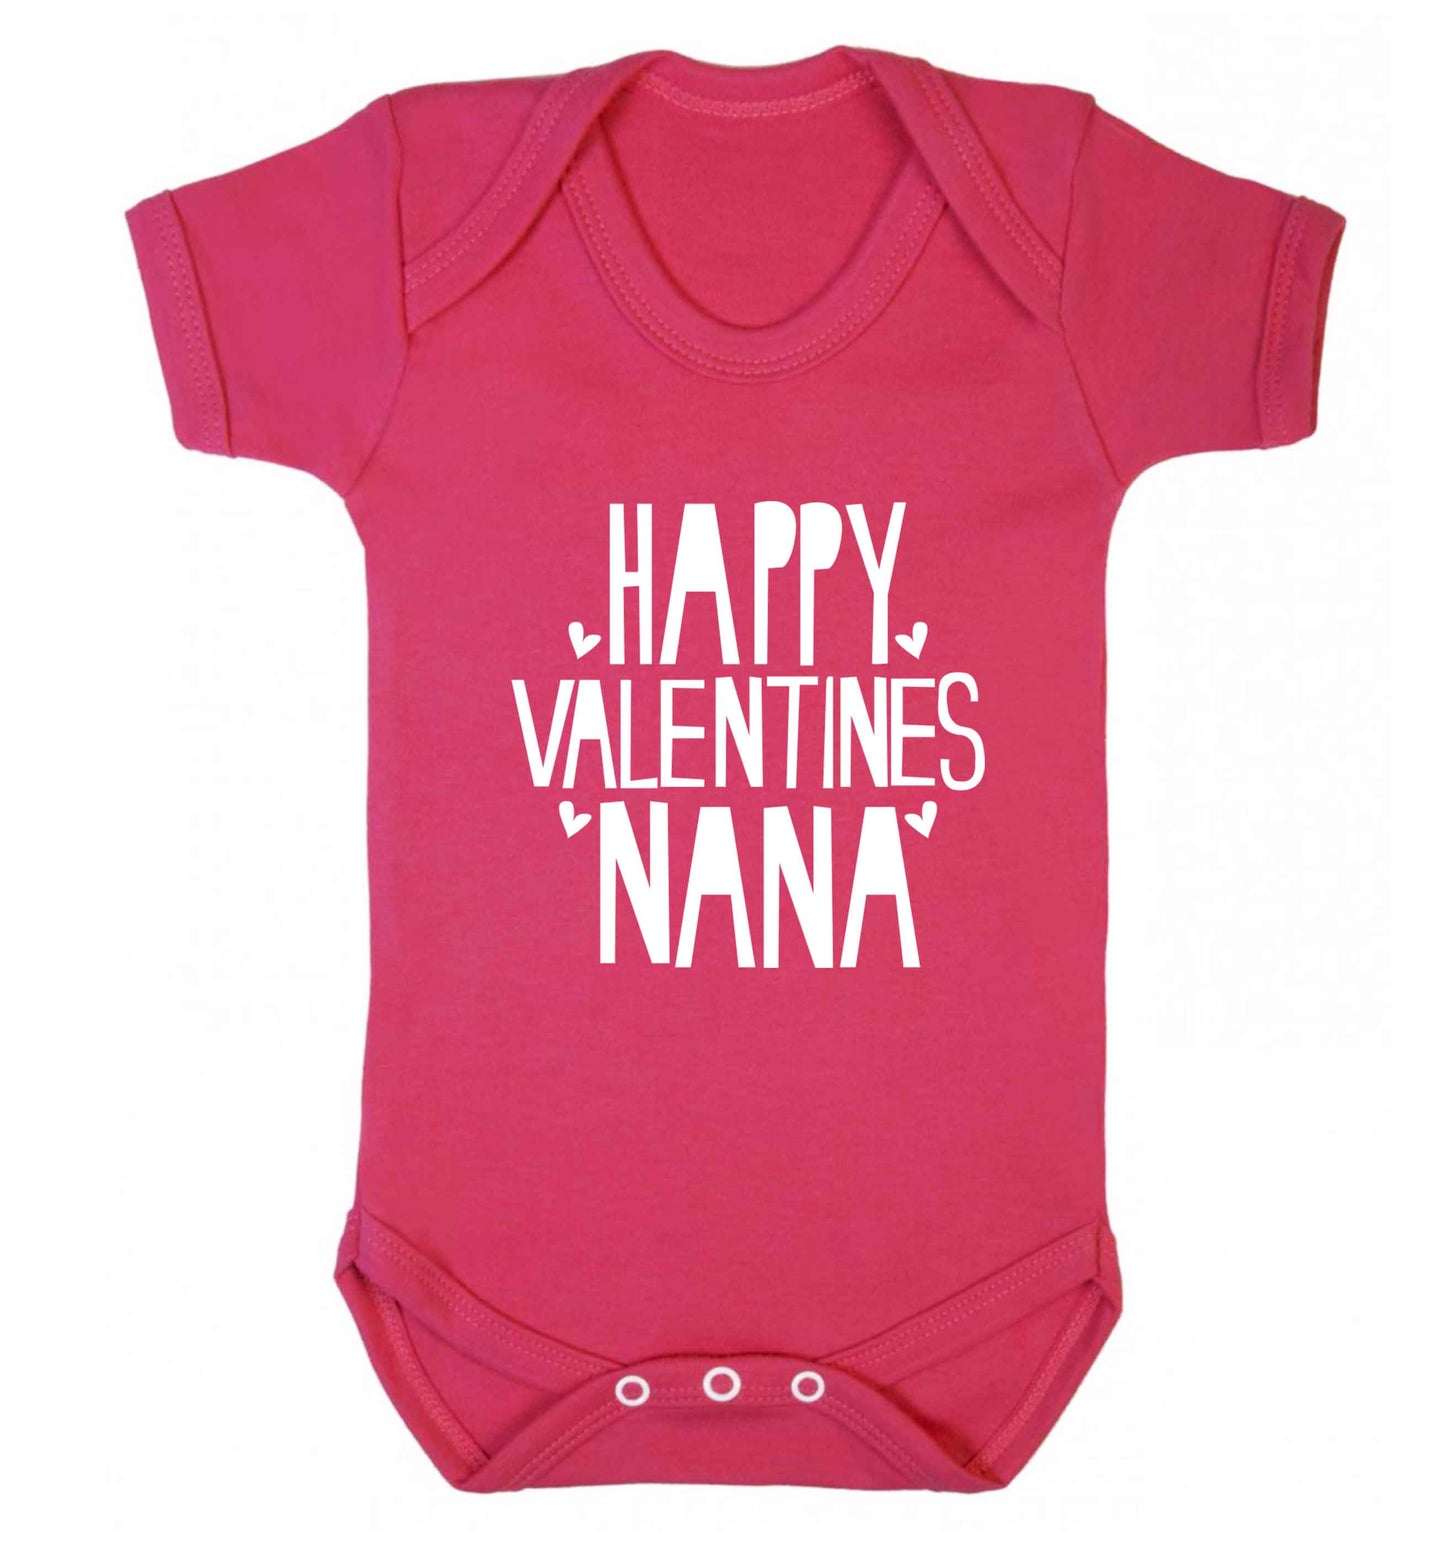 Happy valentines nana baby vest dark pink 18-24 months